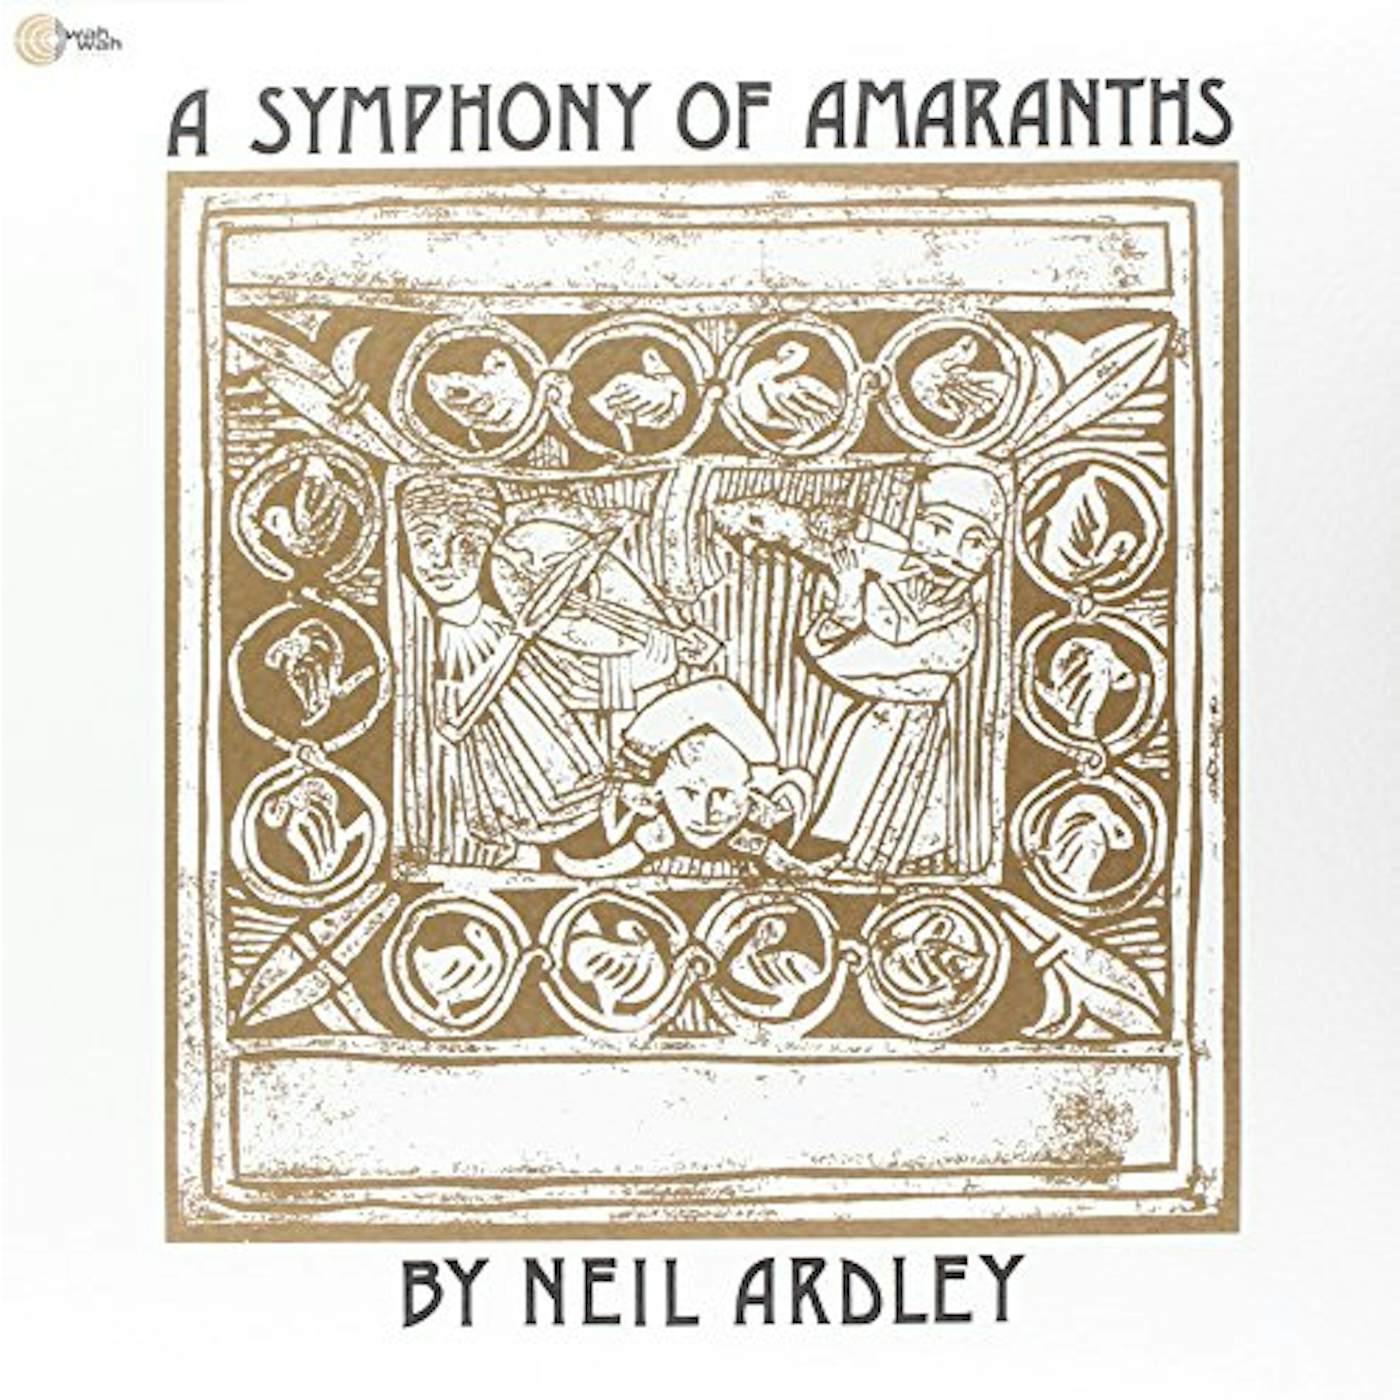 Neil Ardley SYMPHONY OF ARMARANTHS Vinyl Record